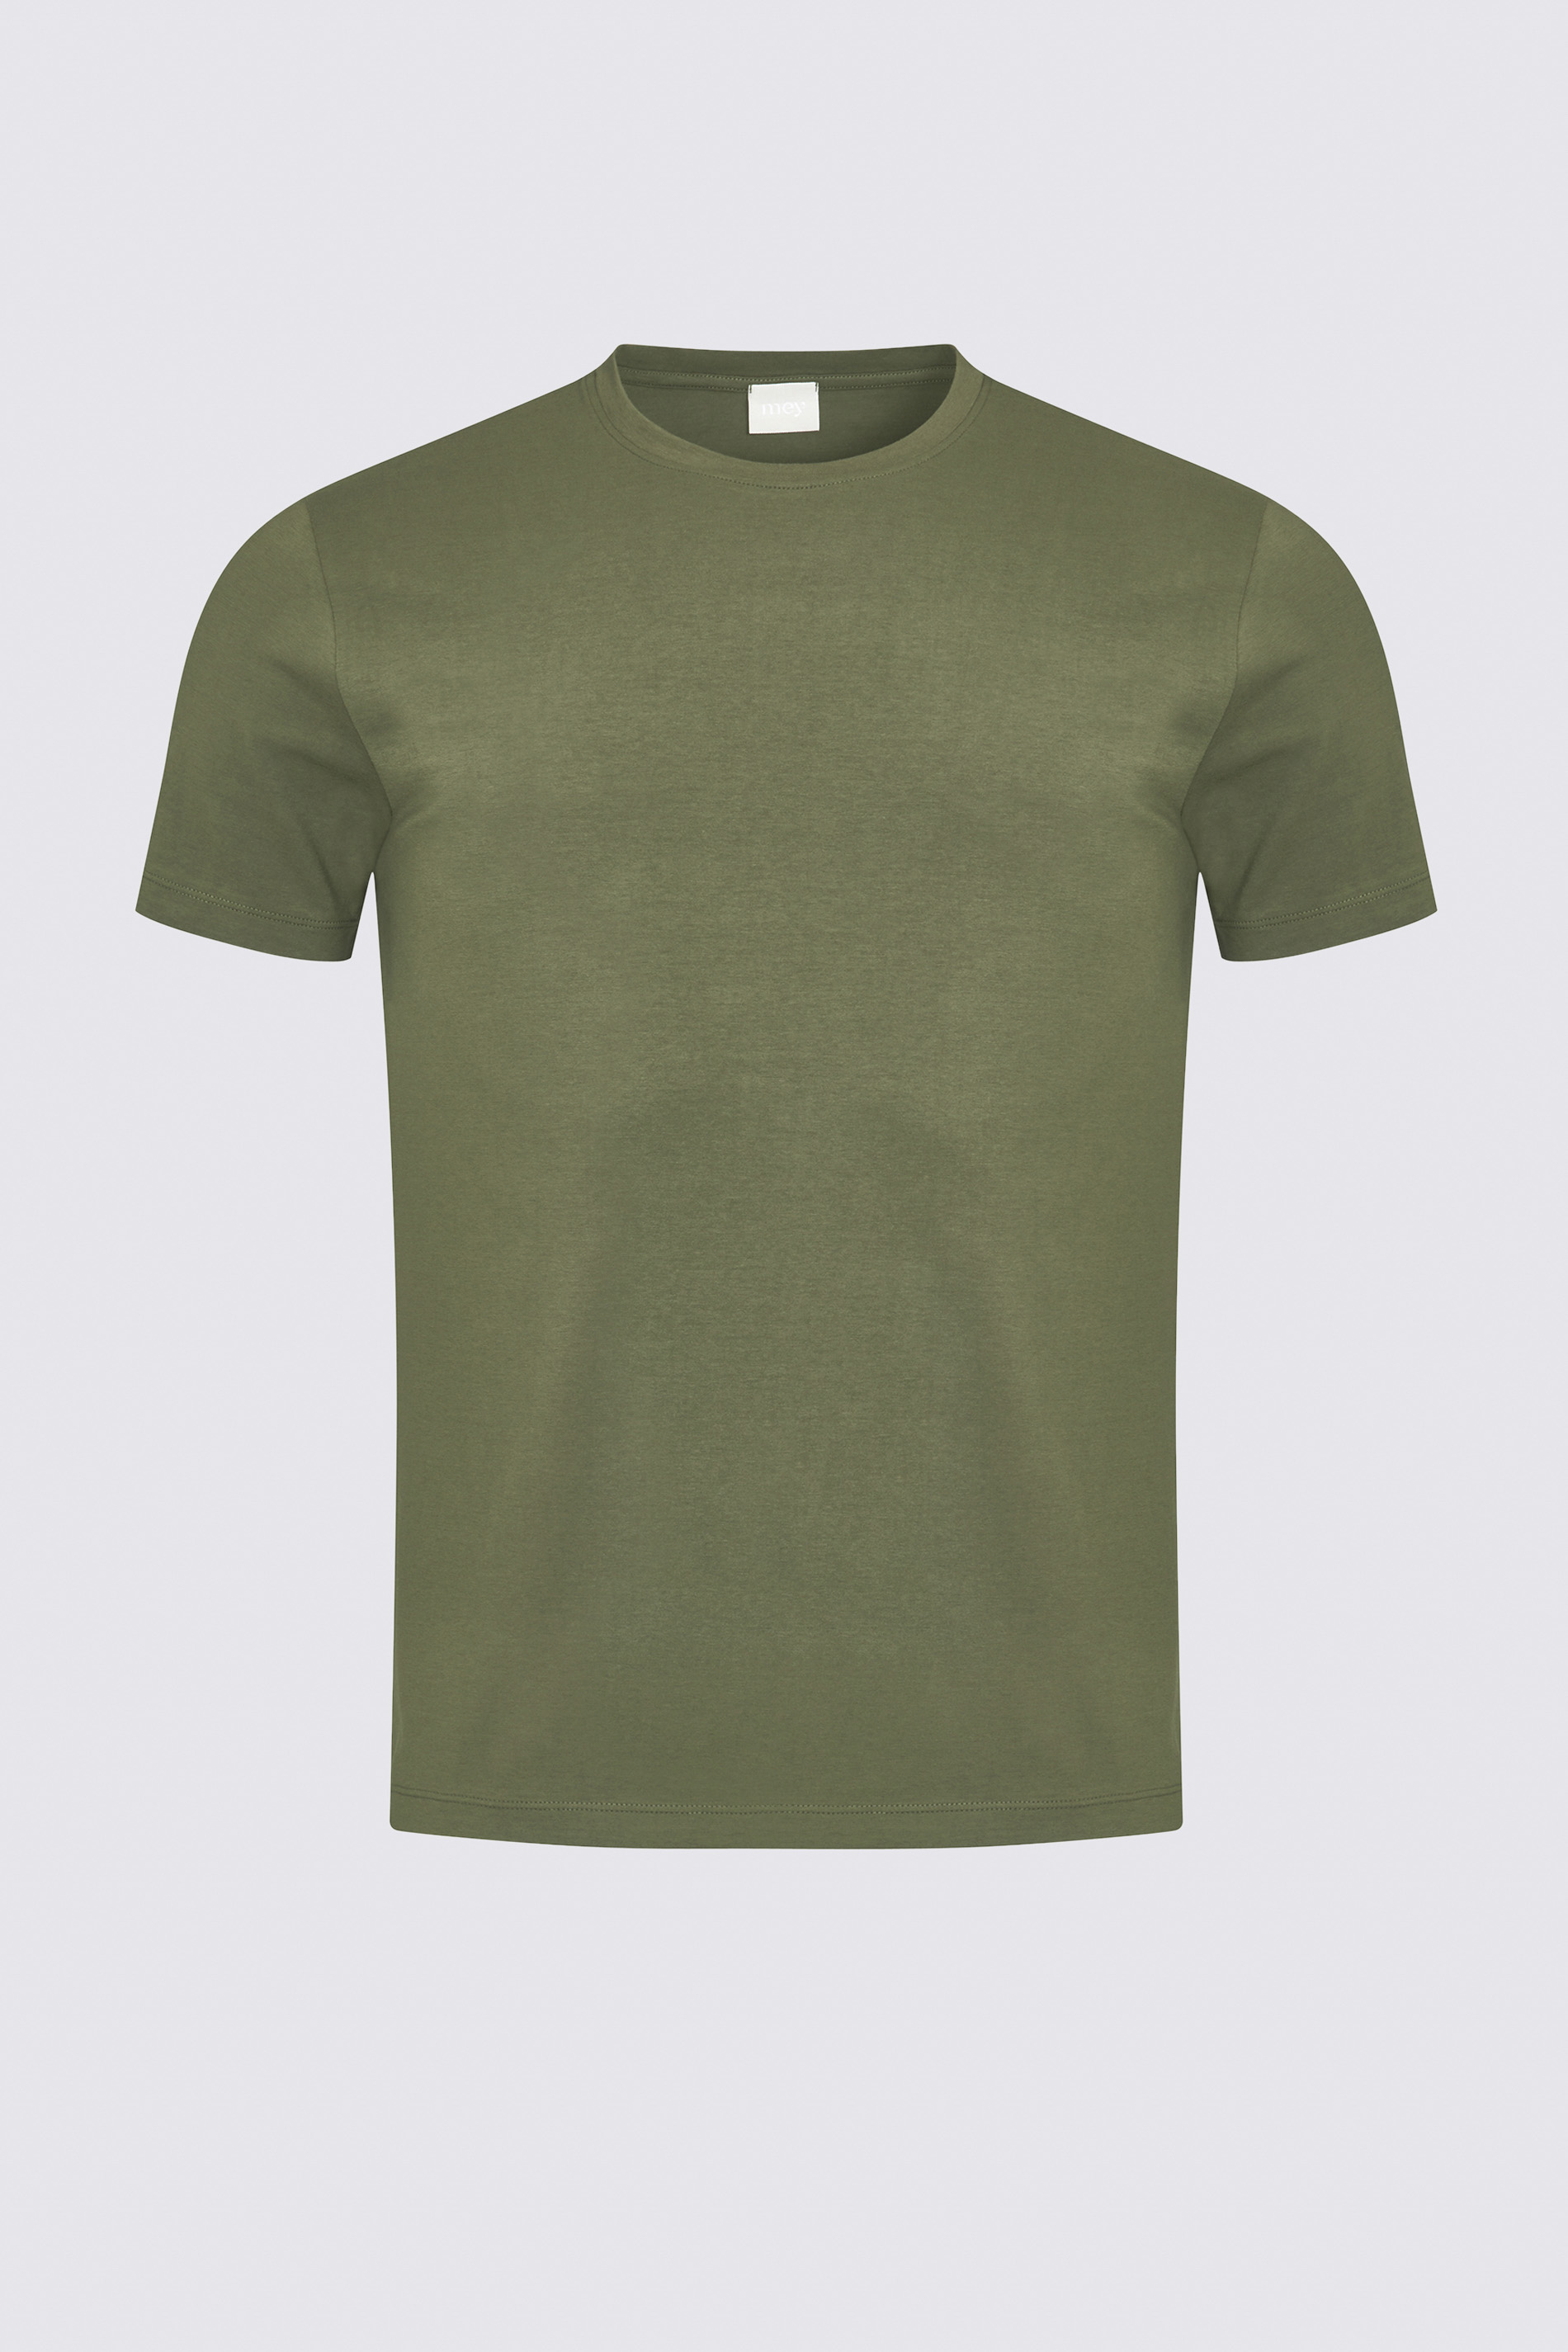 T-shirt Safari Green Serie Relax Uitknippen | mey®